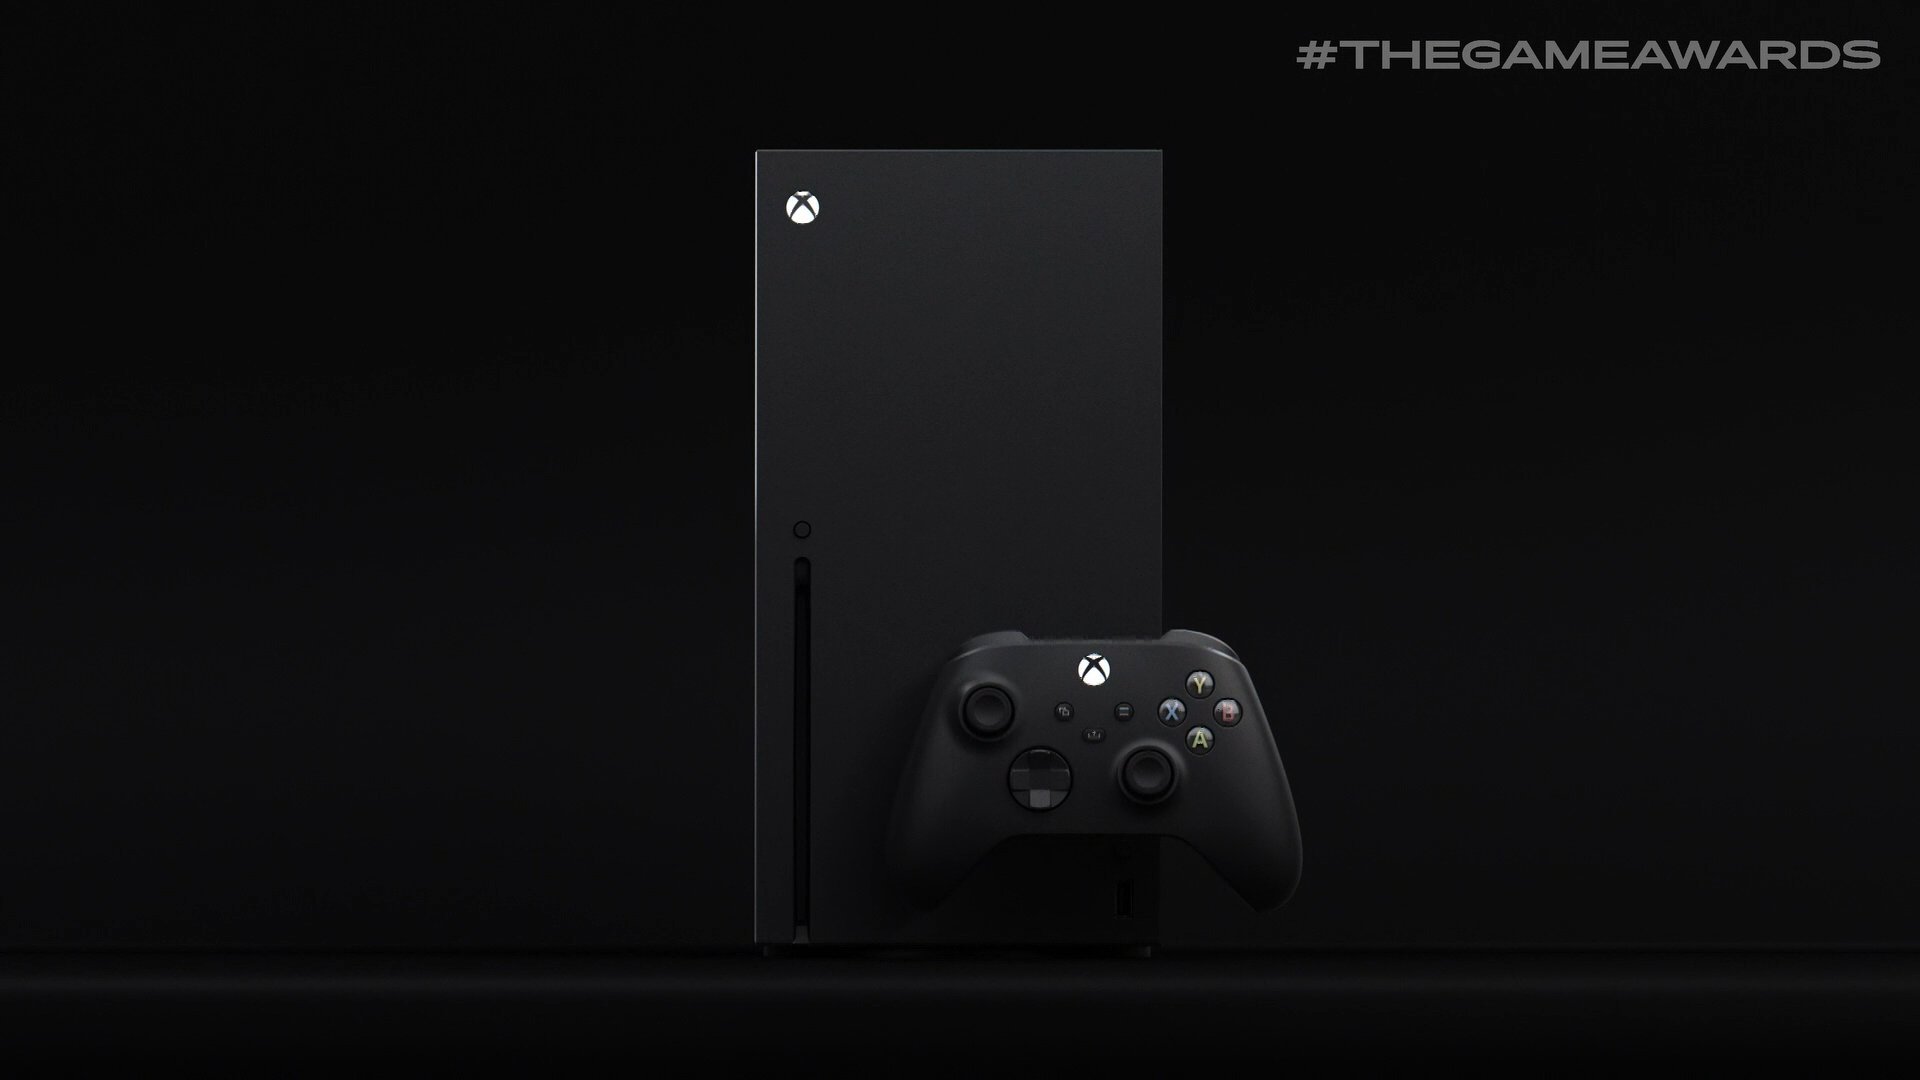 Xbox Series X: ecco la nuova console Microsoft!